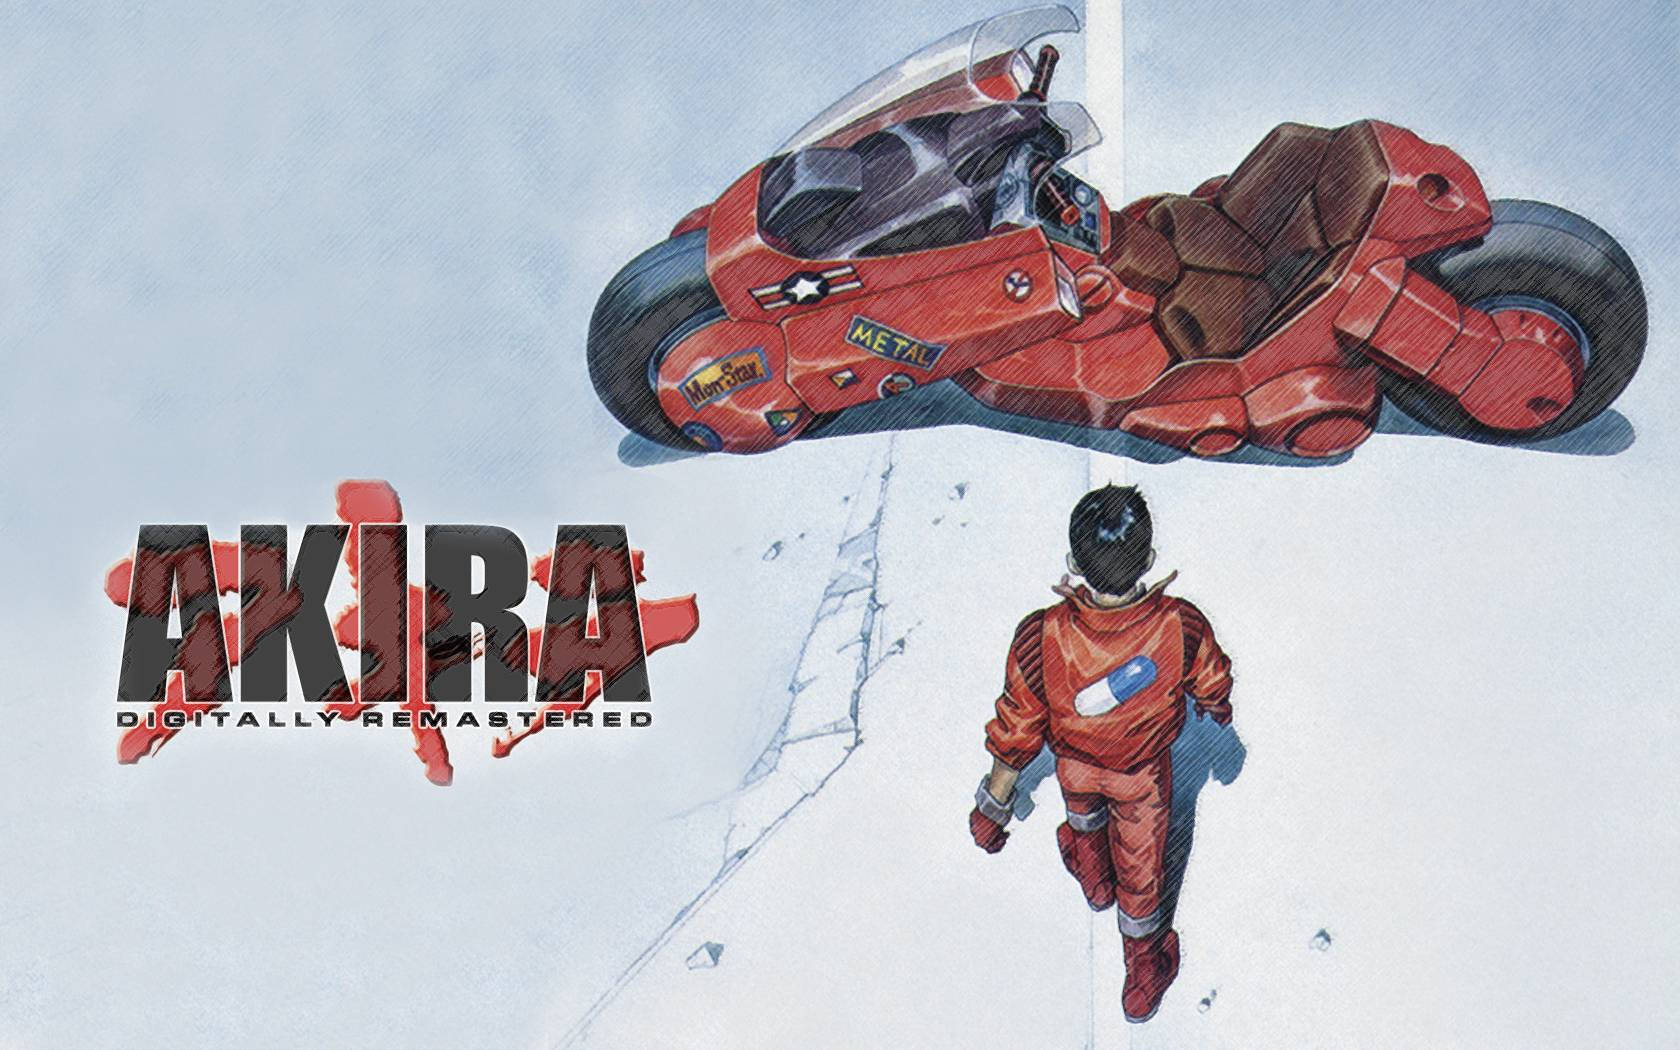 Akira 1680X1050 Wallpaper and Background Image